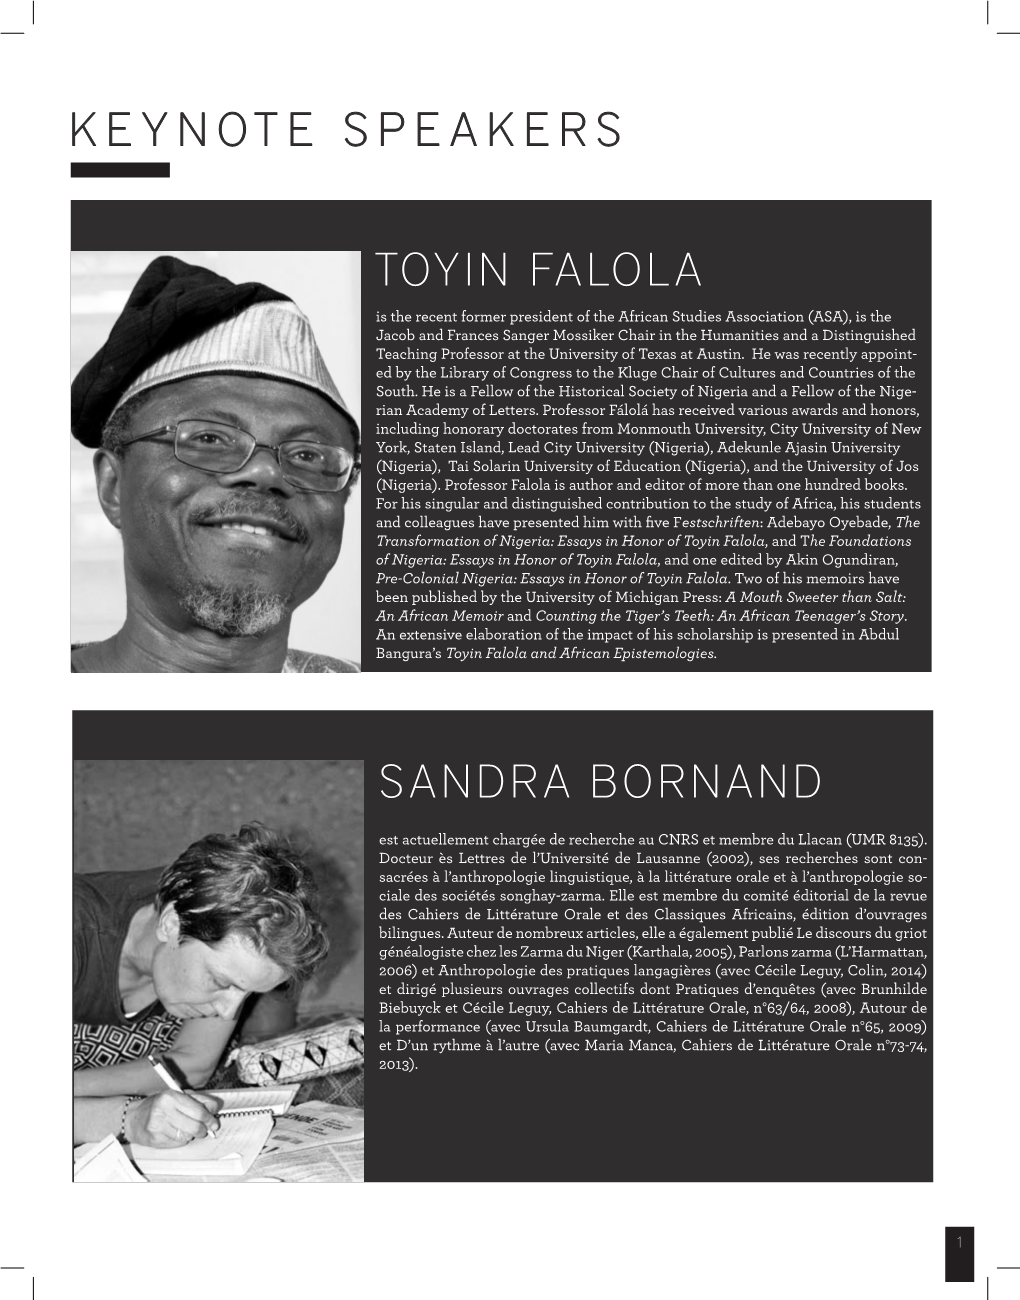 Keynote Speakers Sandra Bornand Toyin Falola